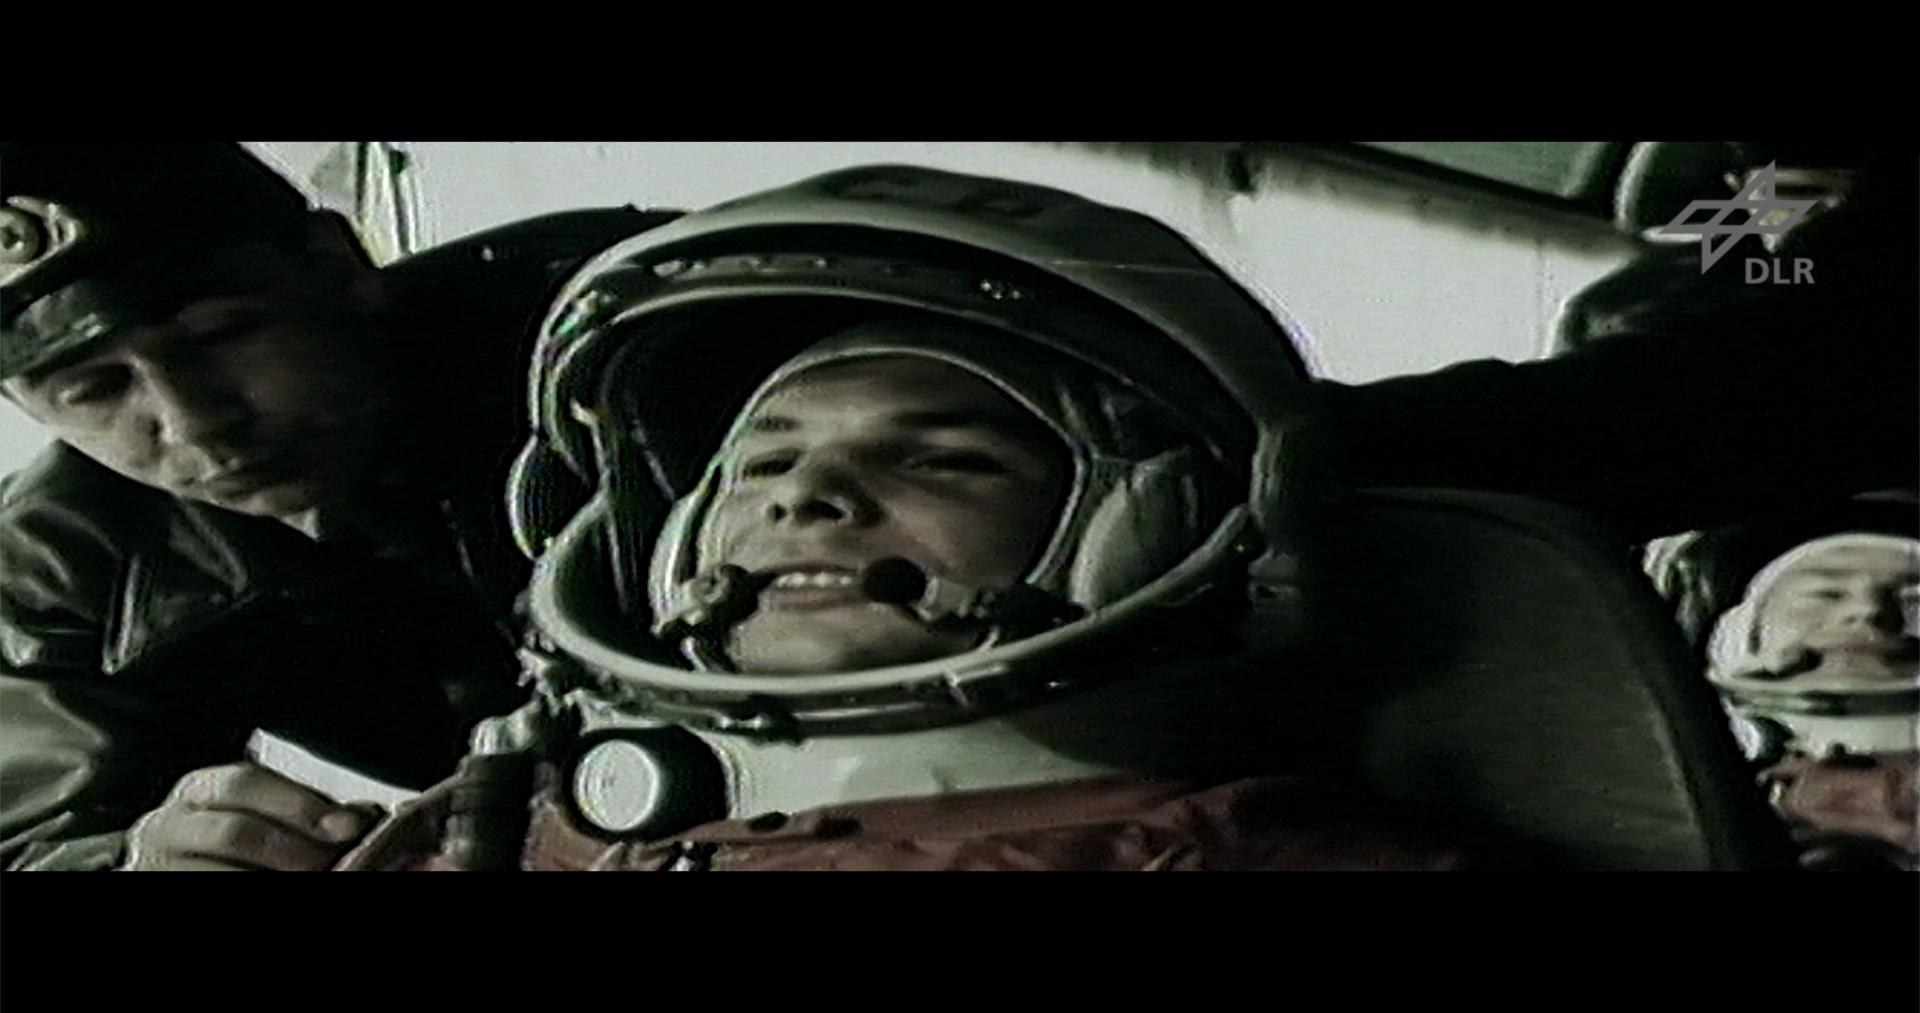 Standbild: 12.04.1961 der erste Mensch fliegt ins All – Juri Gagarin